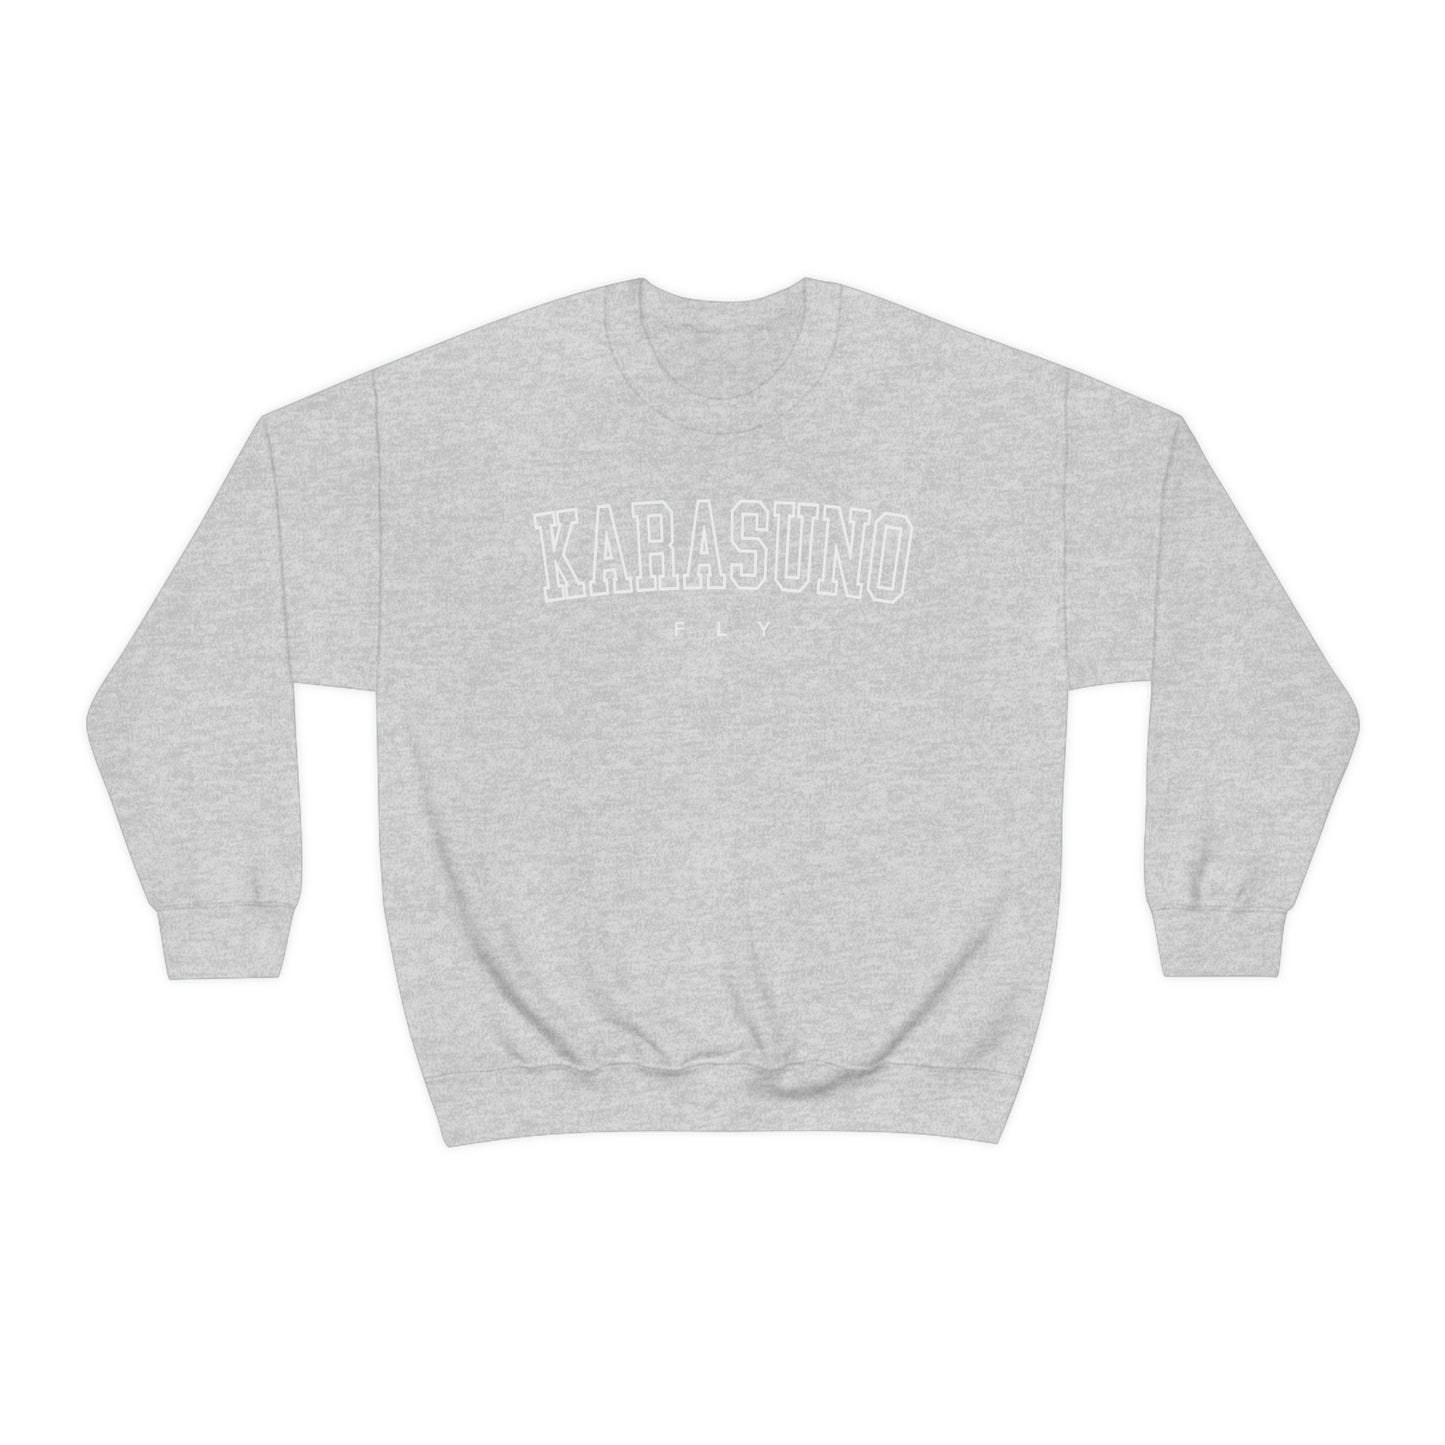 Karasunos FLY sweatshirt jumper pullover